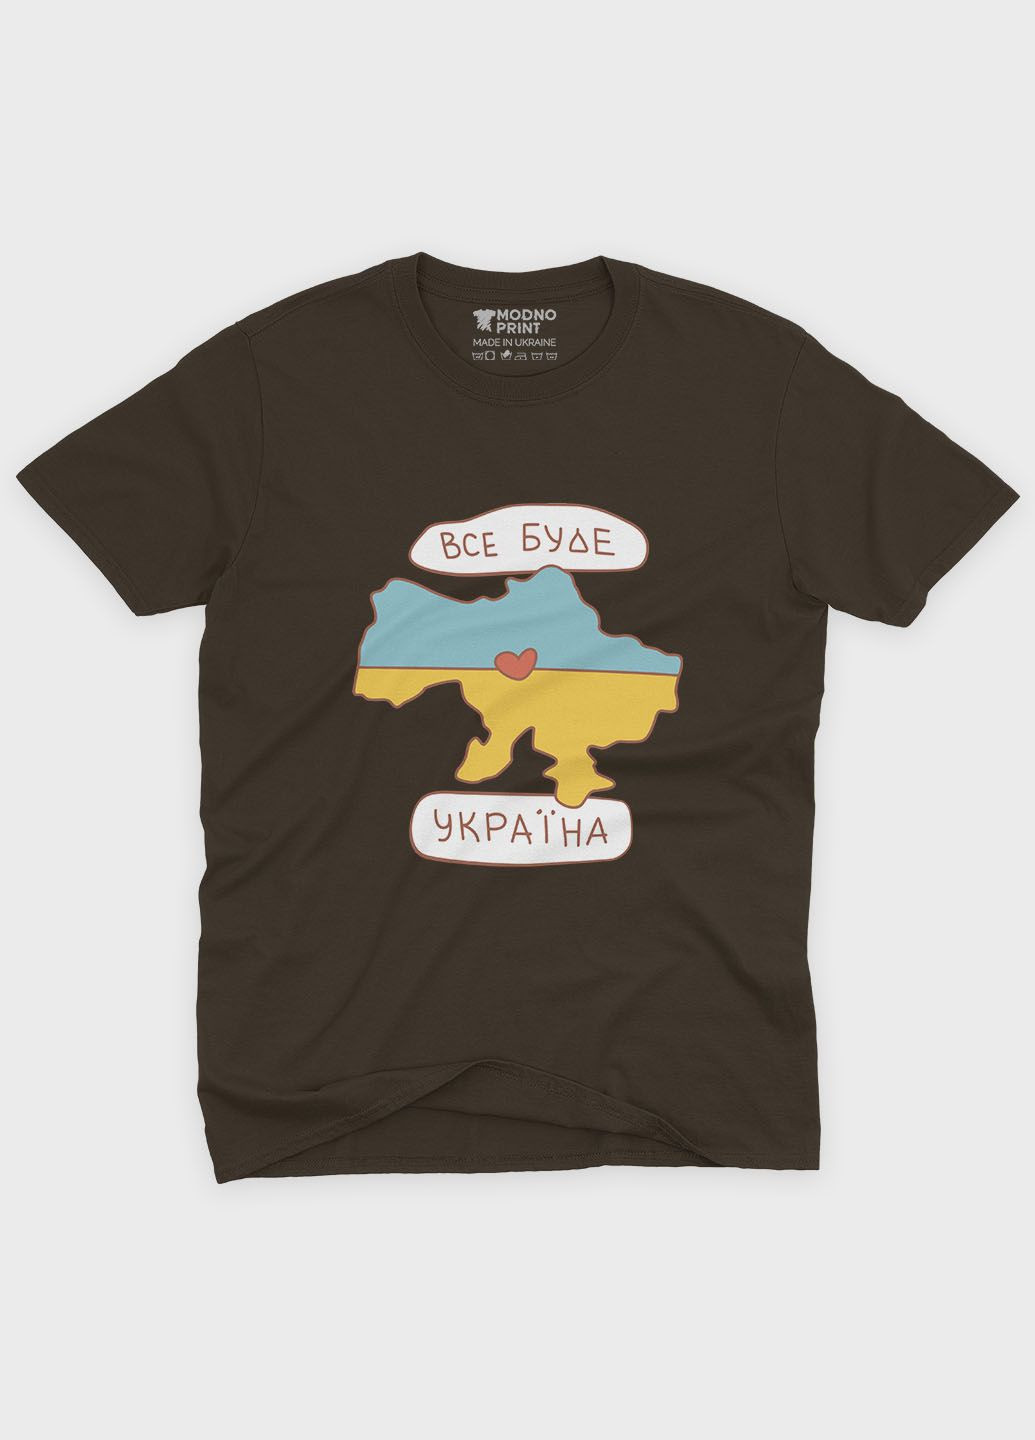 Коричневая мужская футболка с патриотическим принтом все будет украина (ts001-5-dch-005-1-134) Modno